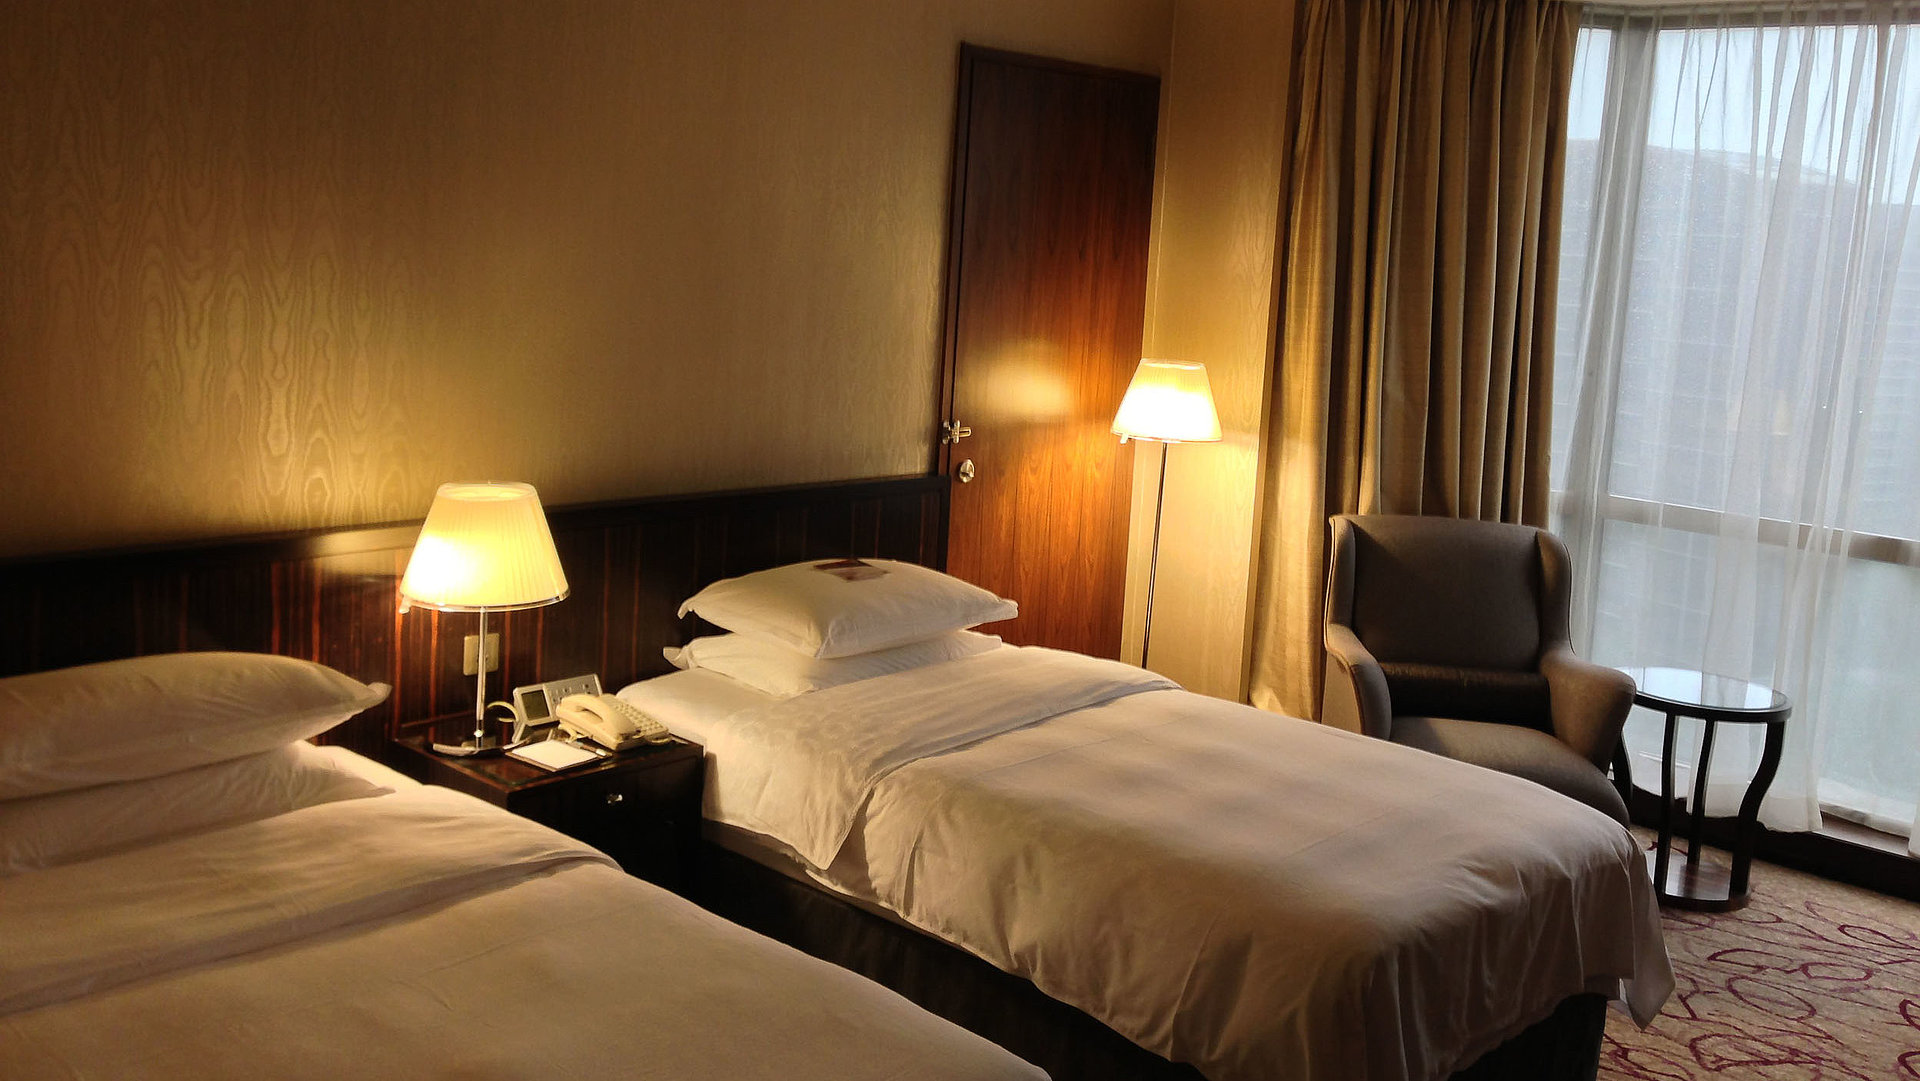 Unterkunft in Oberfranken - sehr ordentliches Hotelzimmer mit zwei Betten, warmer Nachtlampe und Gardinen